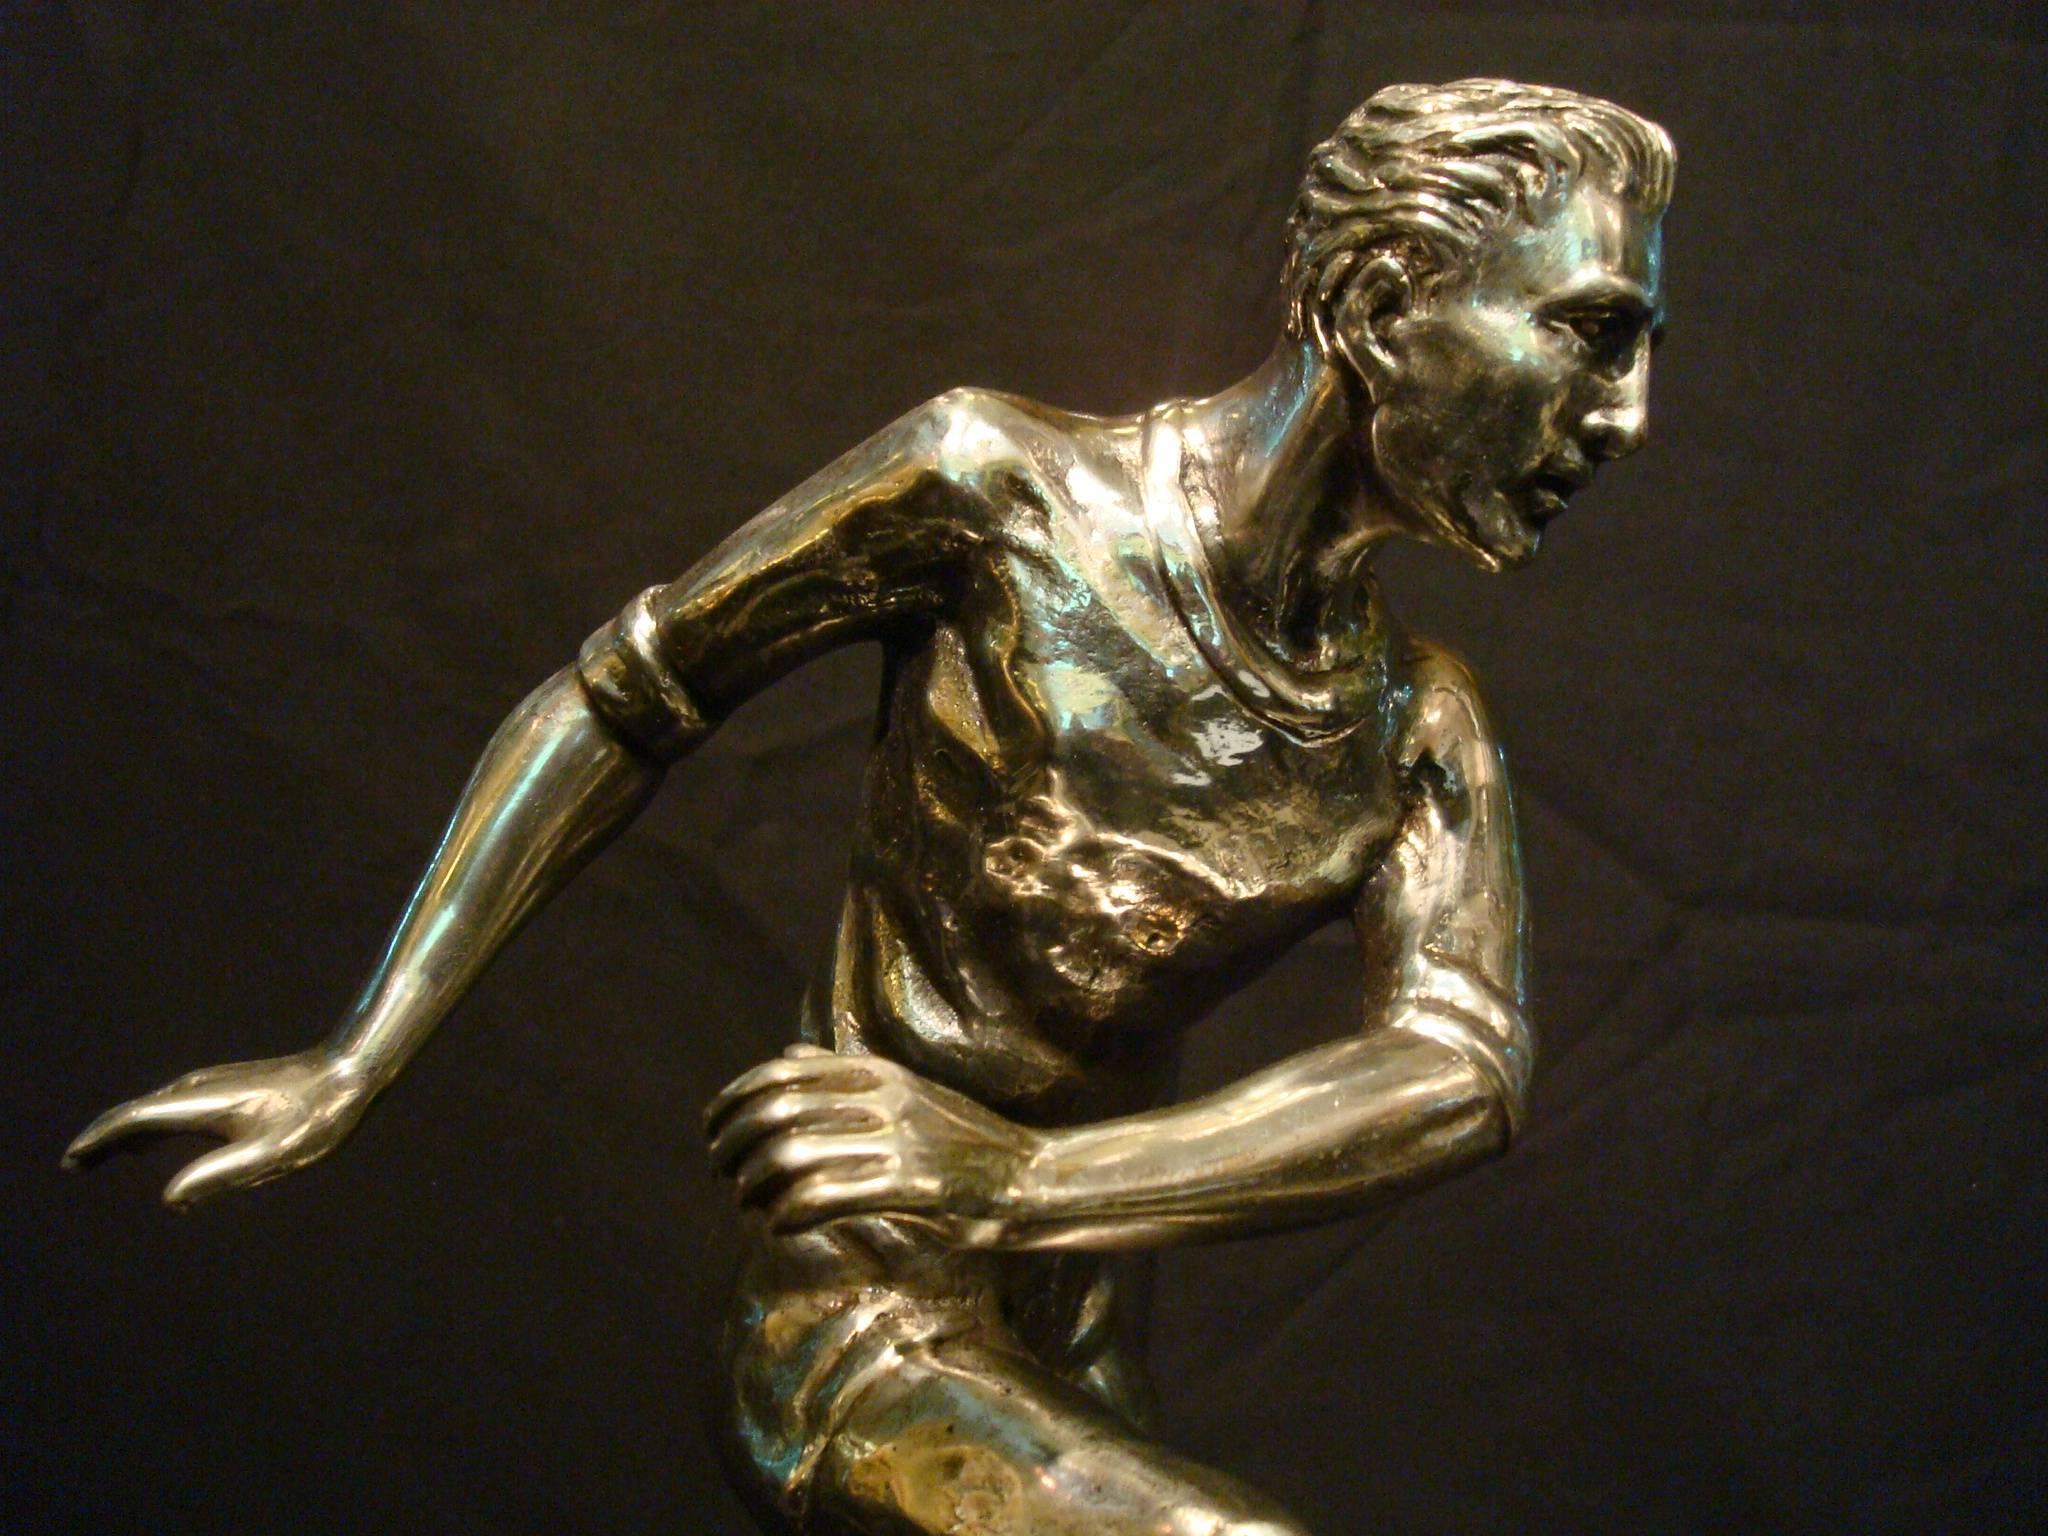 soccer player sculpture